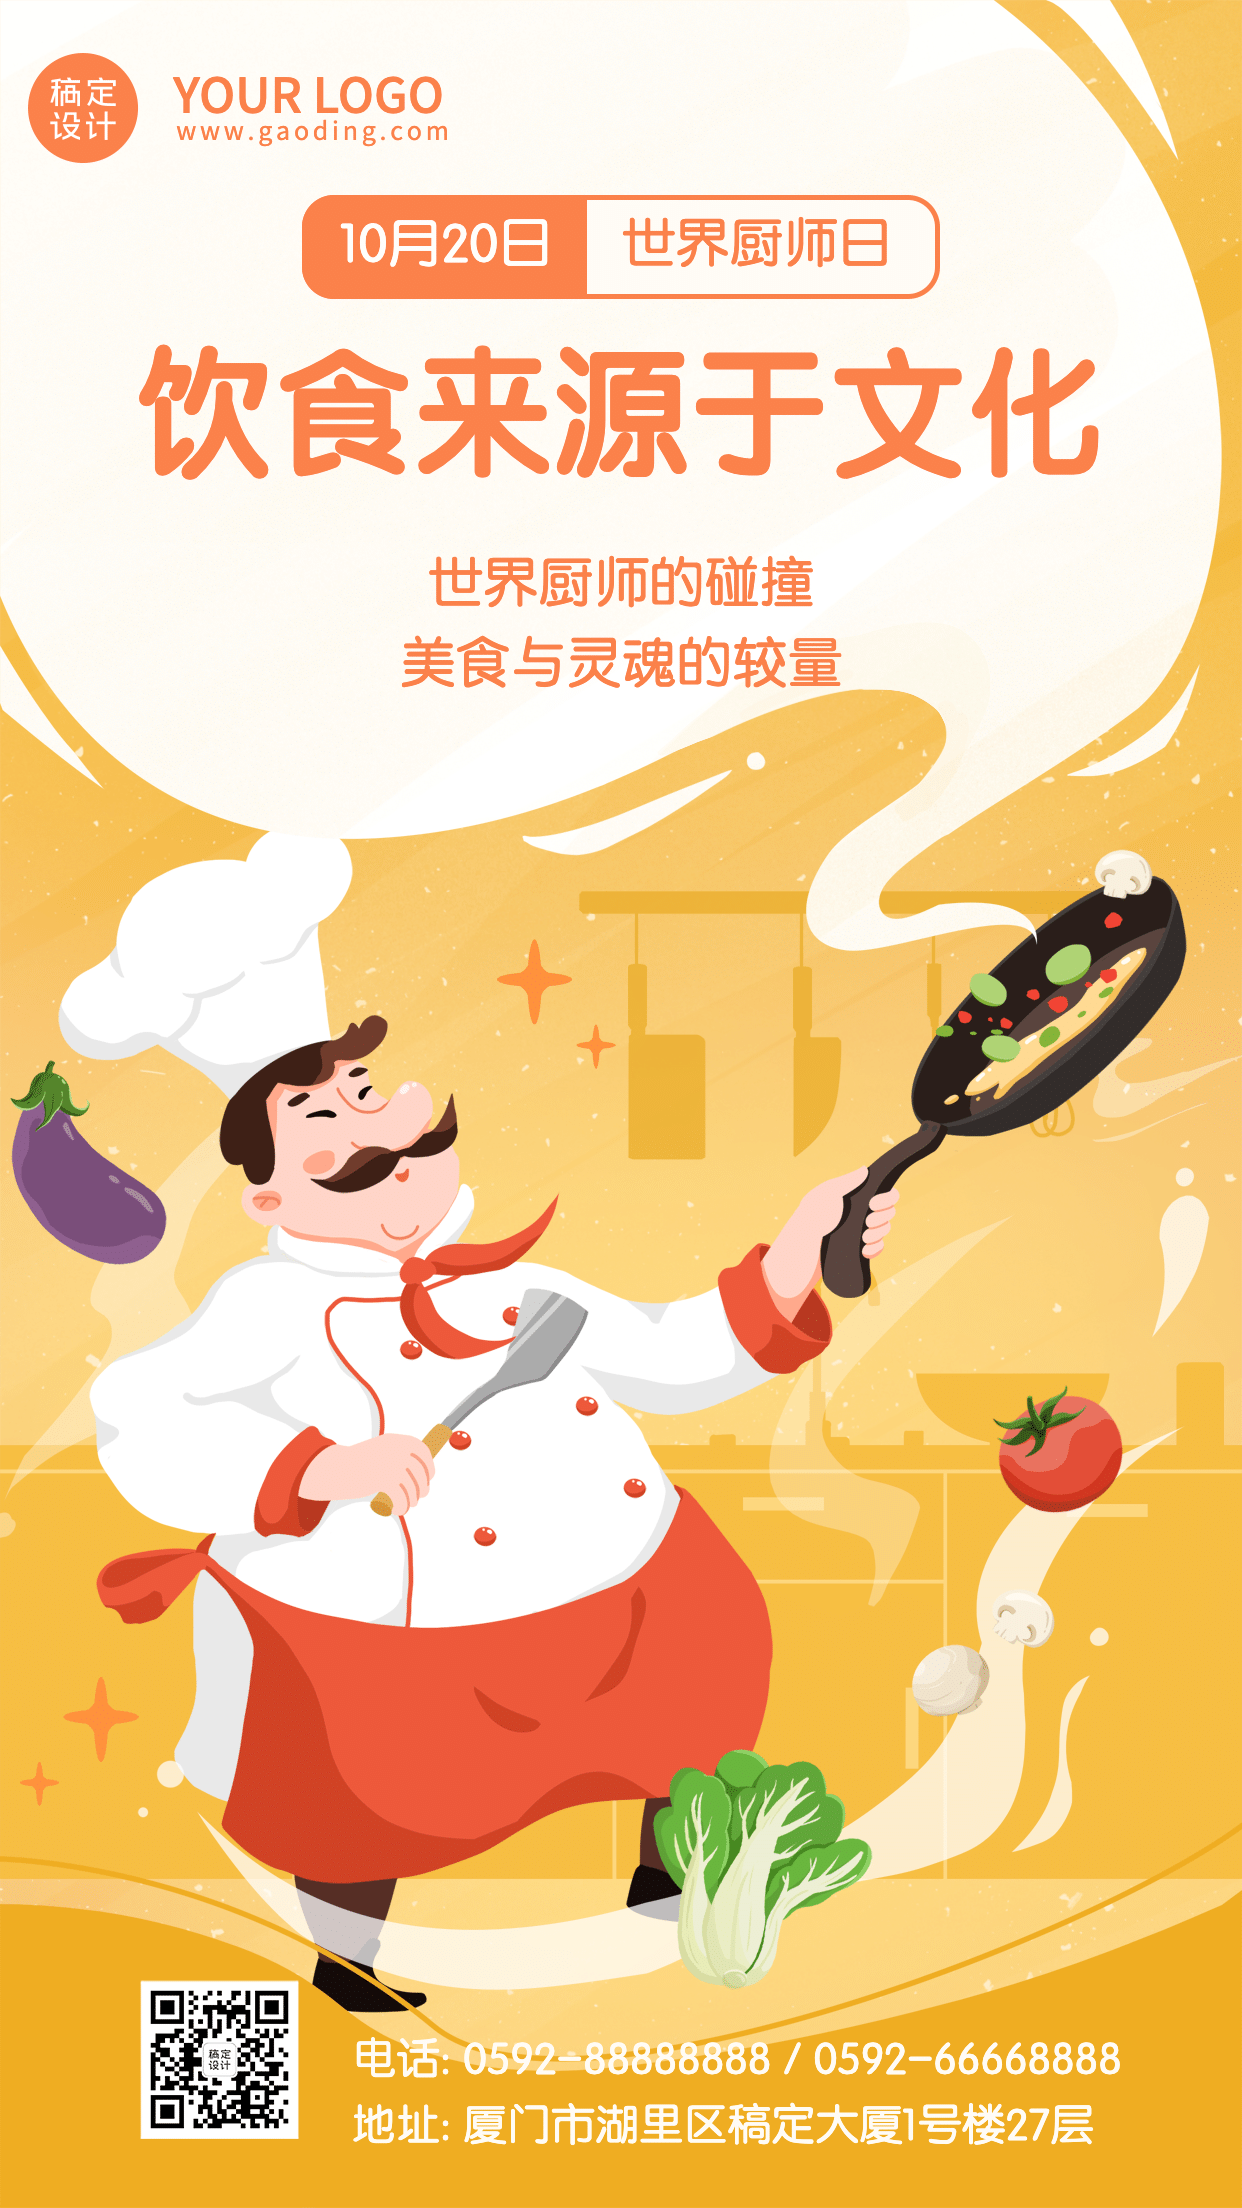 世界厨师日美味美食厨艺烹饪宣传手绘海报预览效果